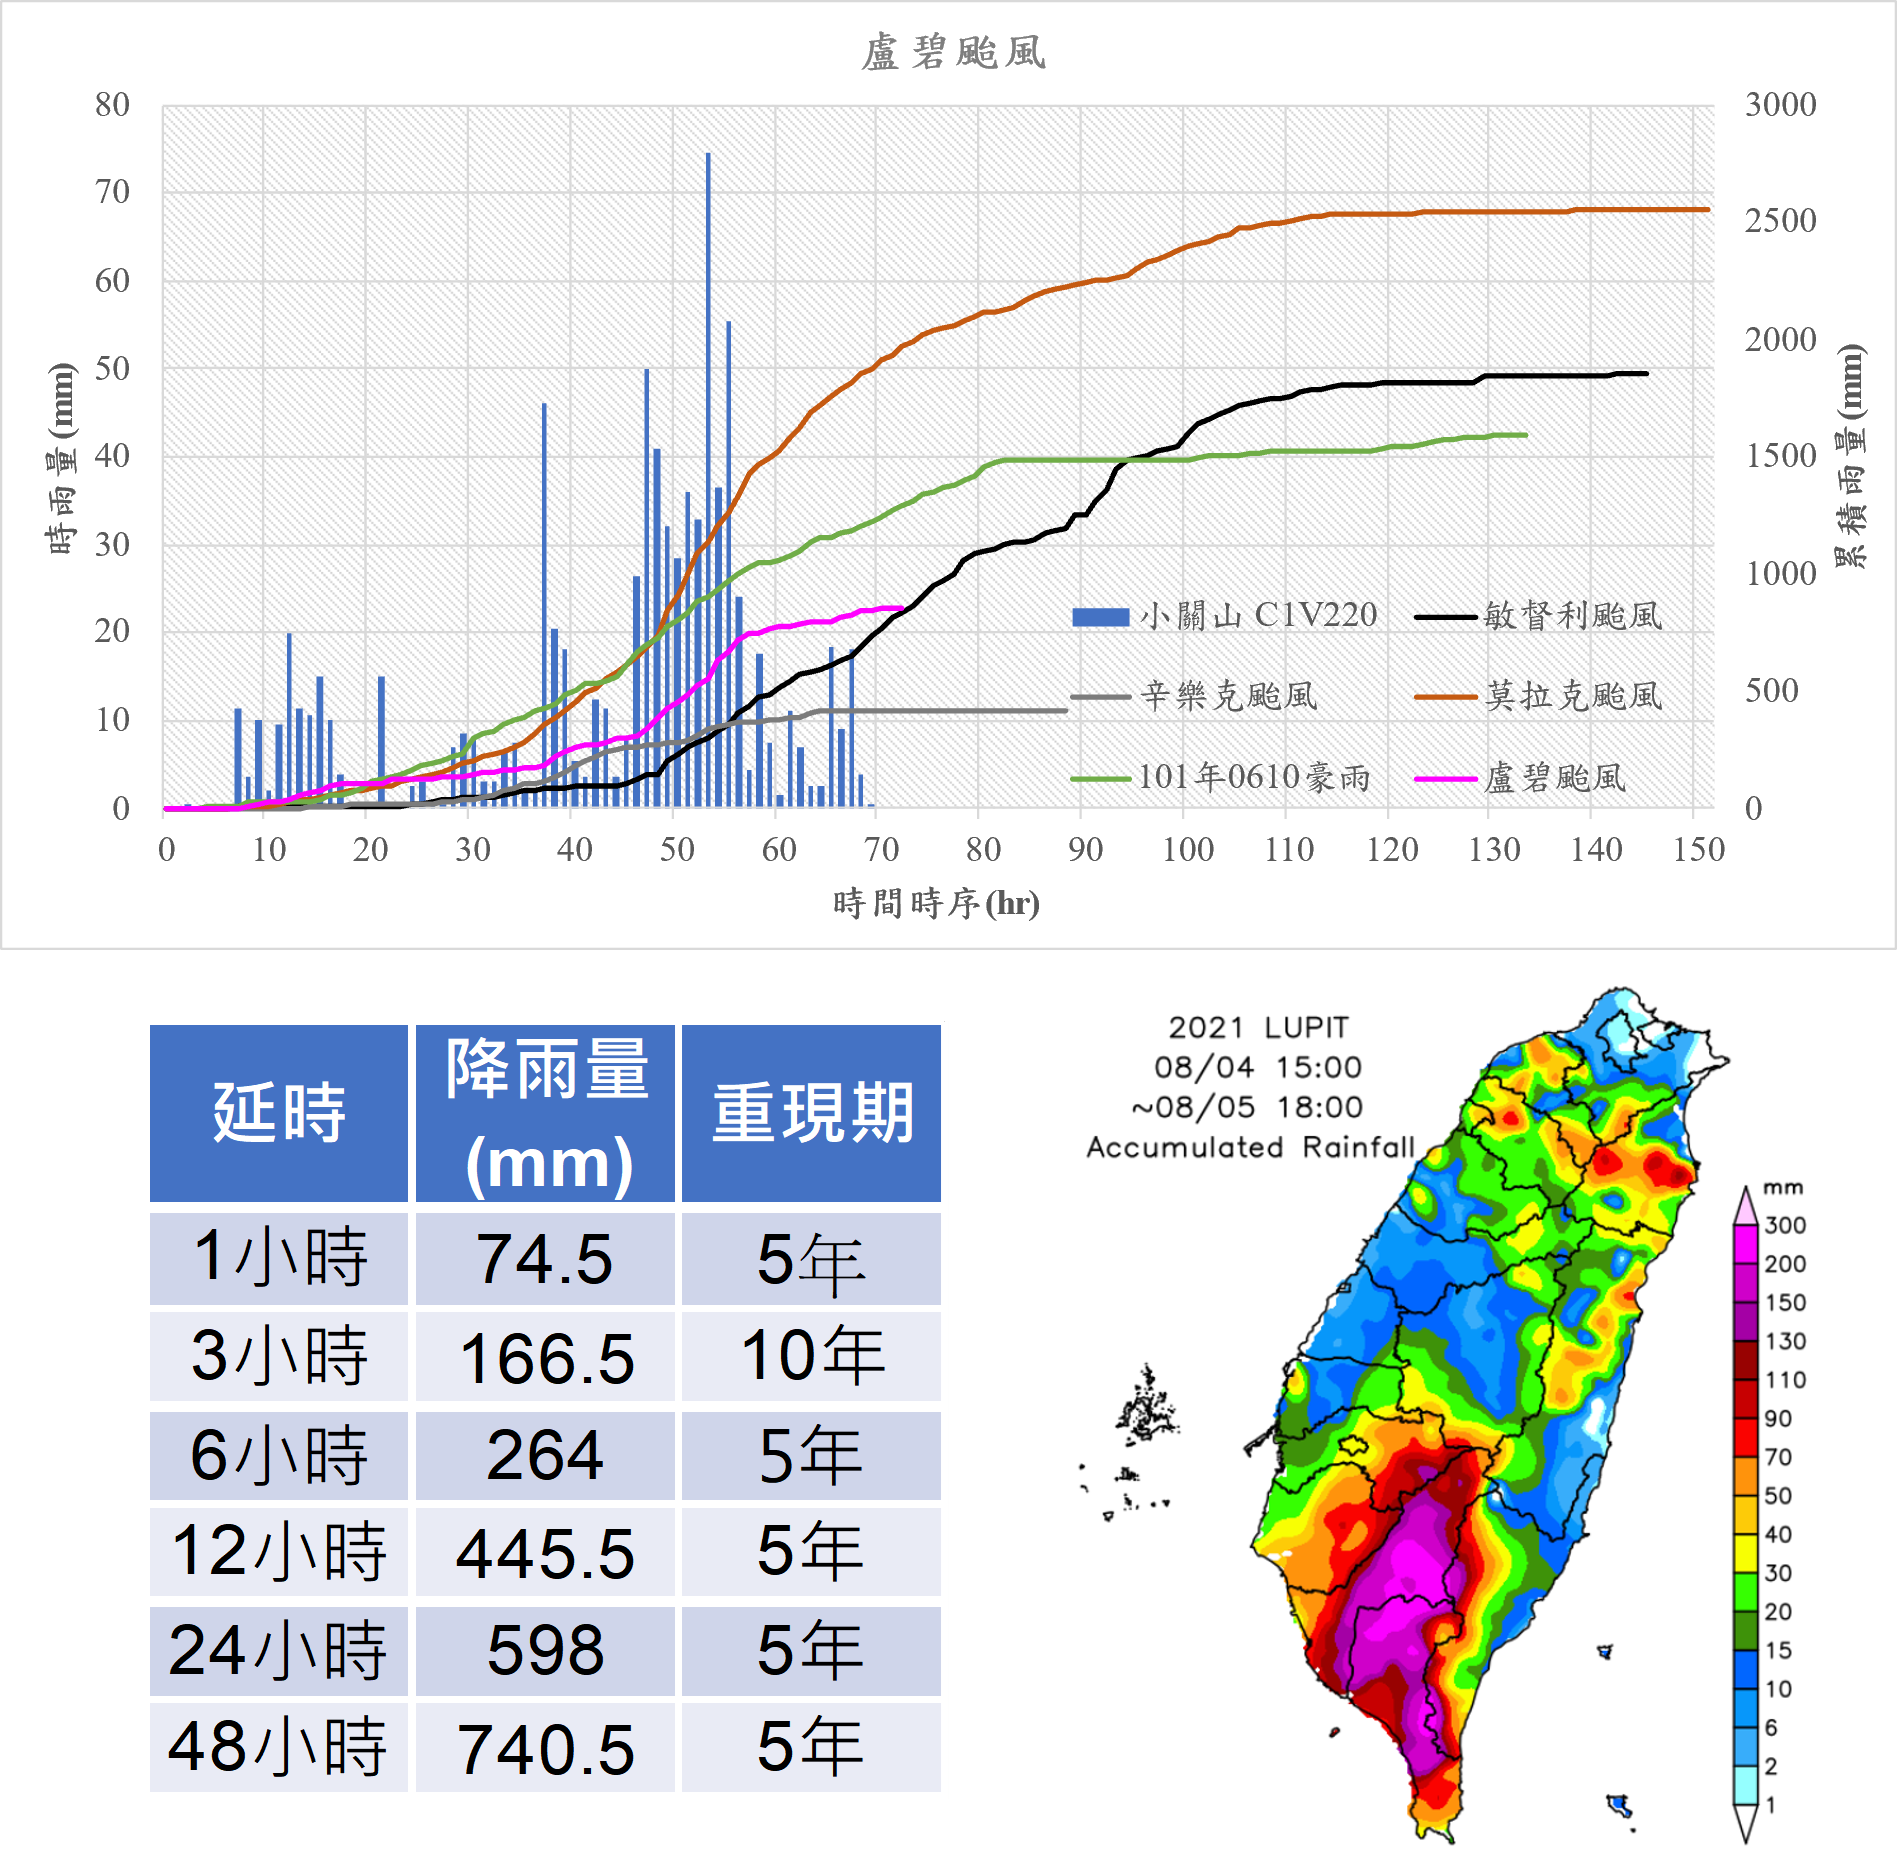 圖 2、盧碧颱風期間降雨情況 (資料來源：中央氣象署小關山雨量站 (C1V220)、全球災害事件簿-盧碧颱風及0806豪雨資訊 (nat.gov.tw) )